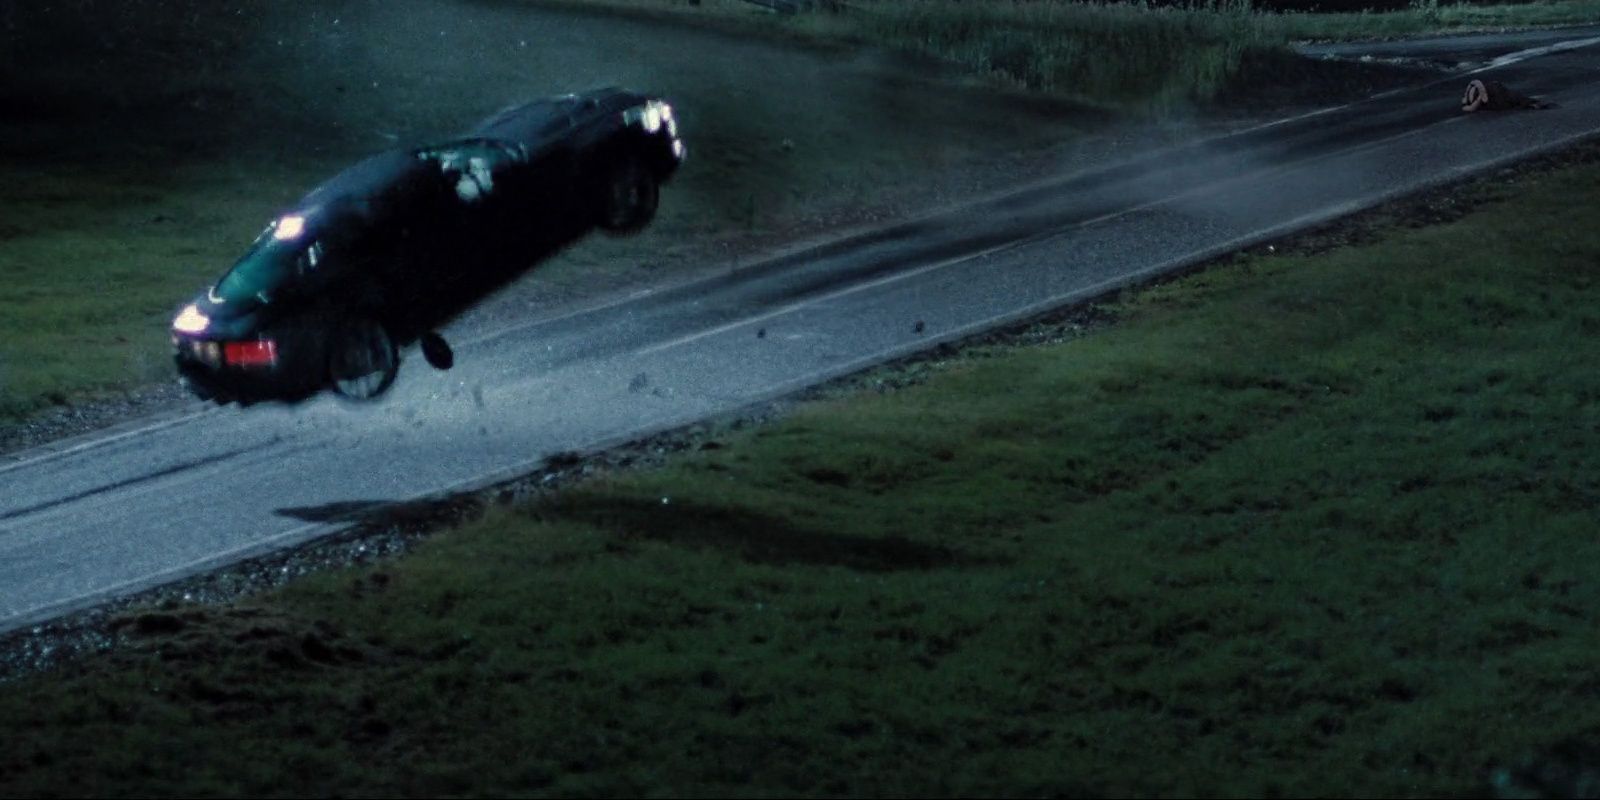 Bond's car flipping through the air